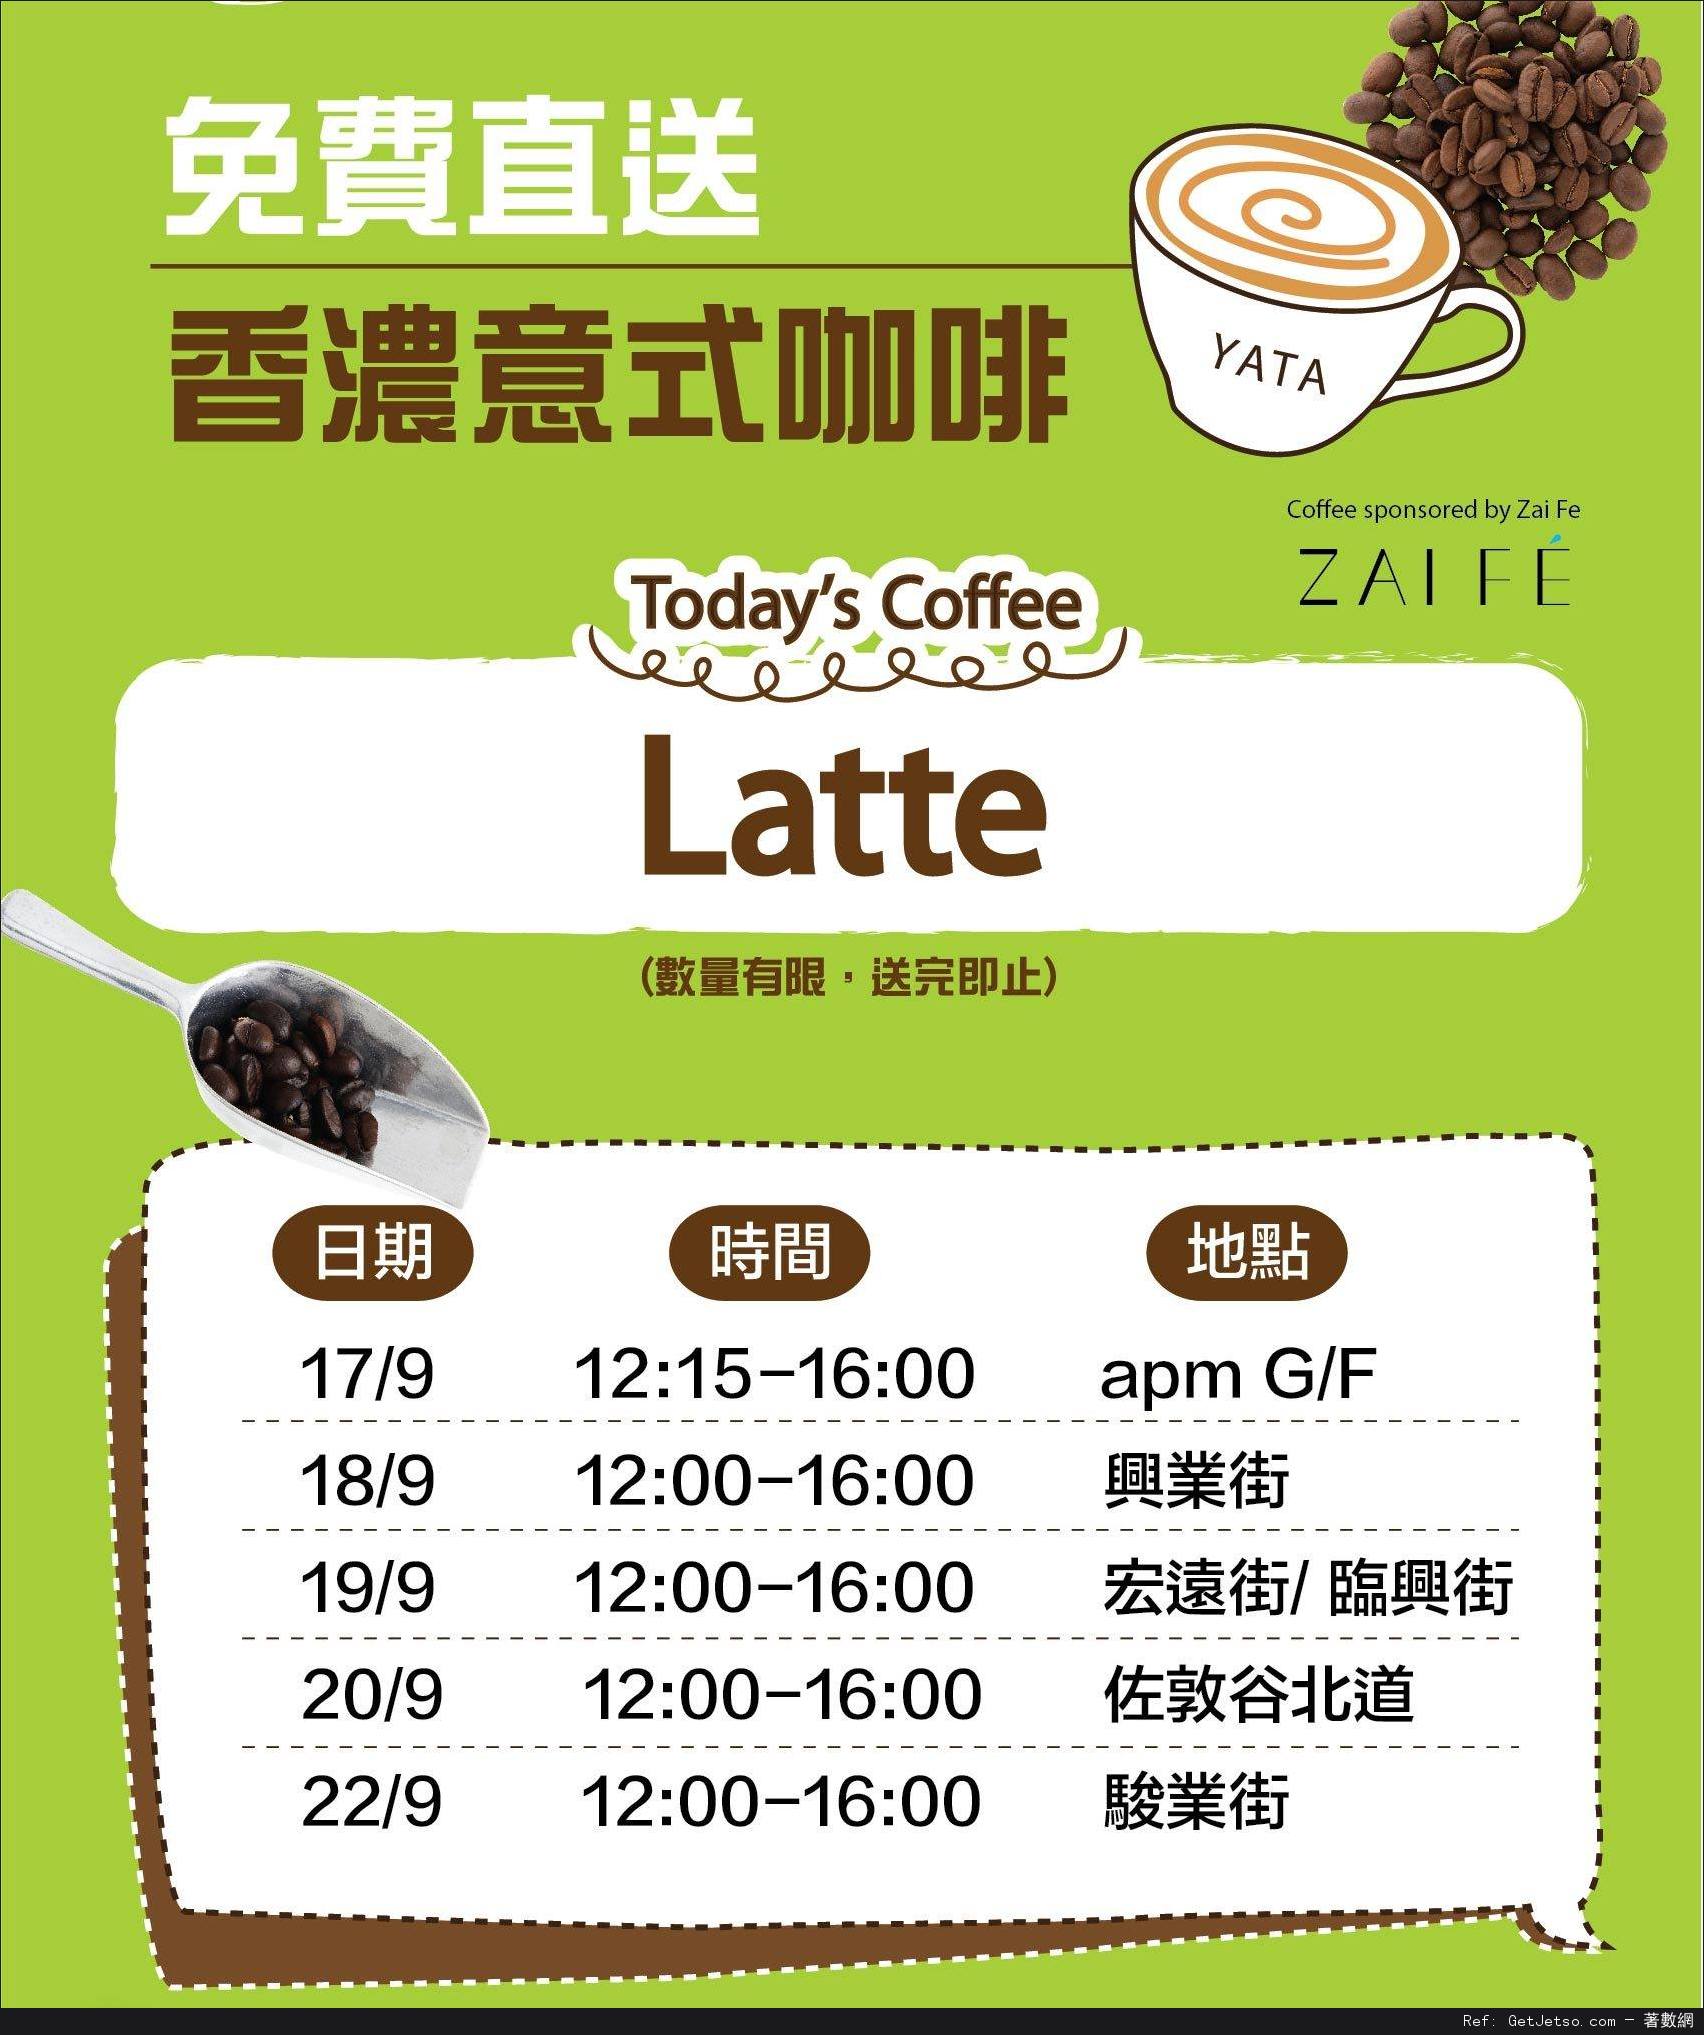 一田超市apm新店開幕免費派發咖啡優惠(至14年9月22日)圖片1